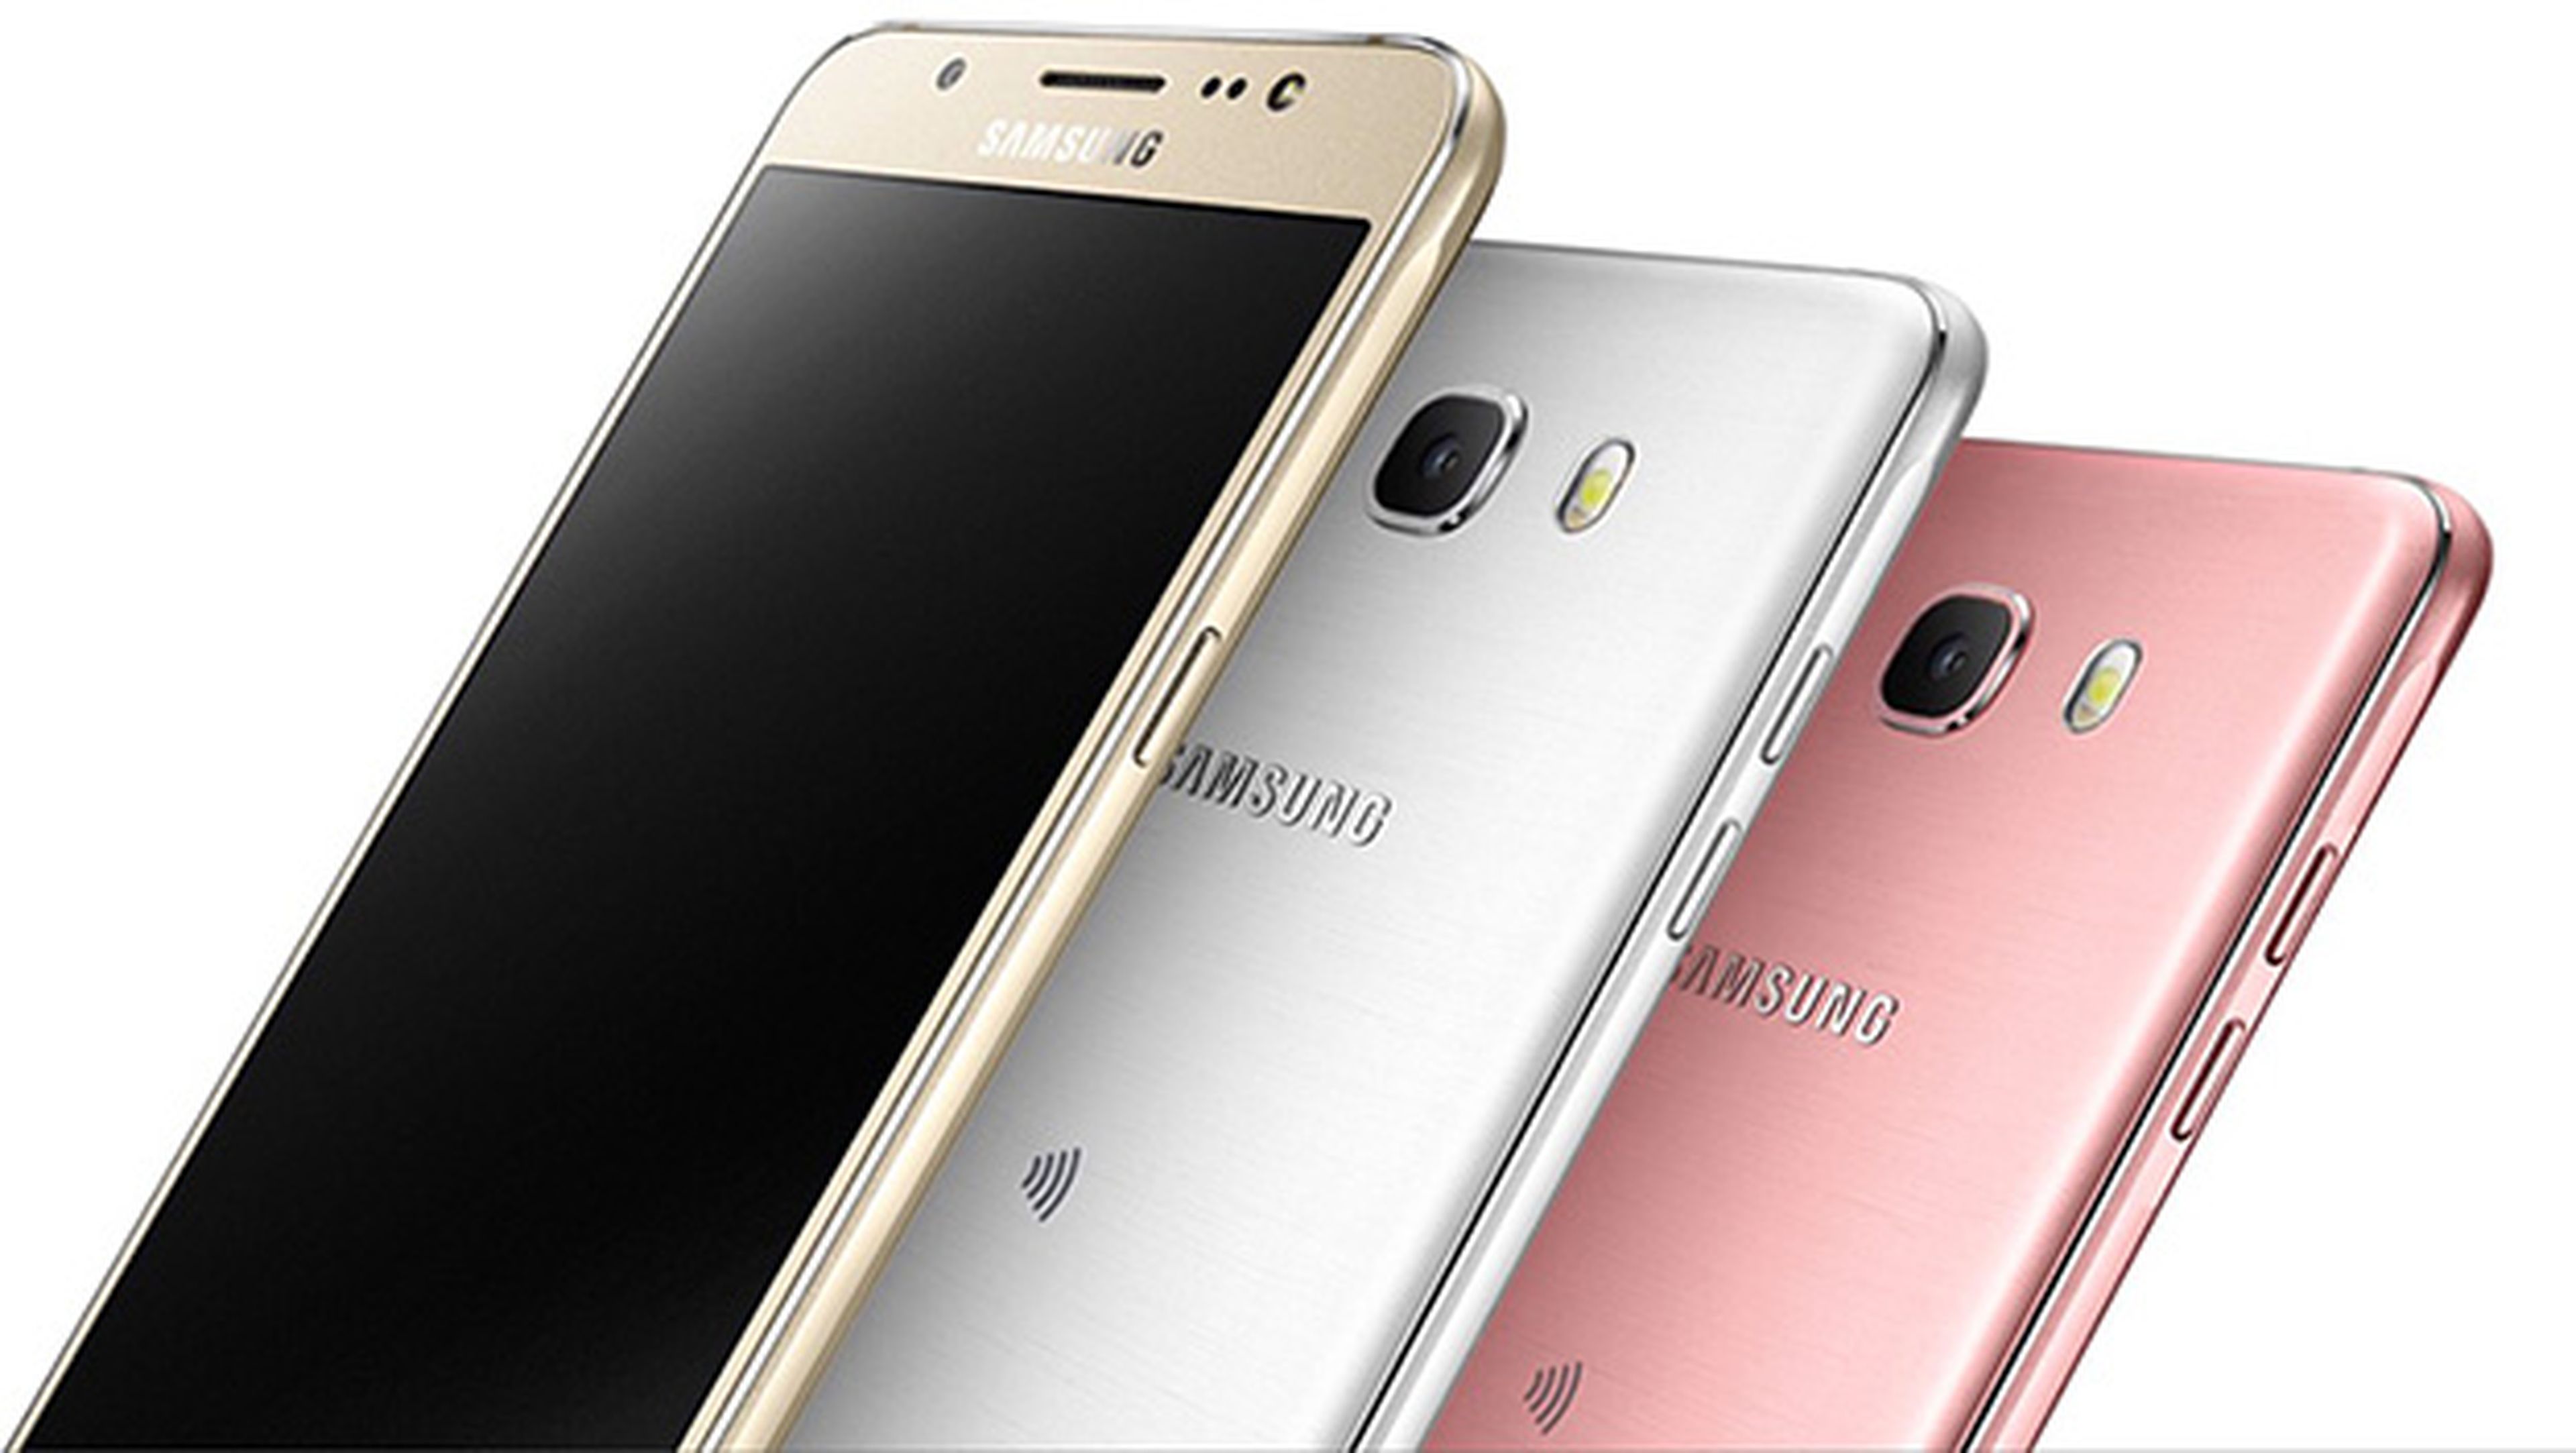 aluminio Nosotros mismos aleatorio Samsung renueva la gama baja con el Galaxy J5 Prime y J2 Pro | Computer Hoy